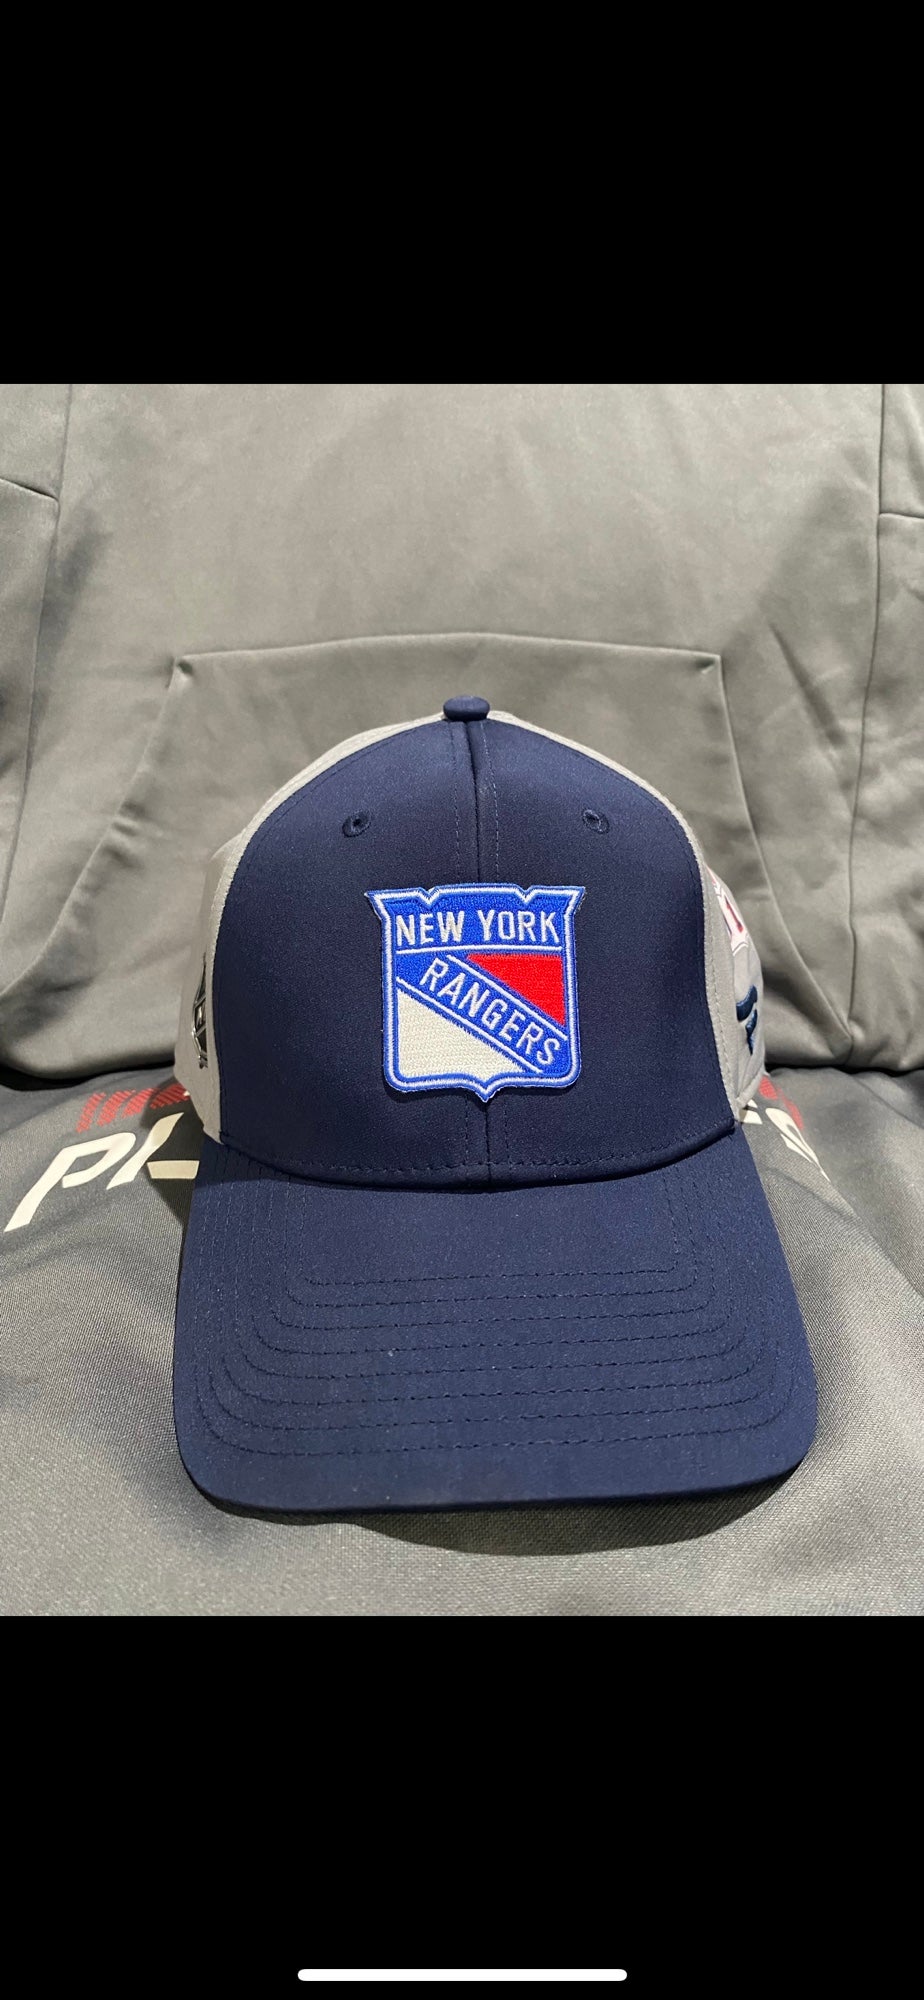 Chris Kreider: Krieds Shirt + Hoodie, NYC - NHLPA Licensed - BreakingT